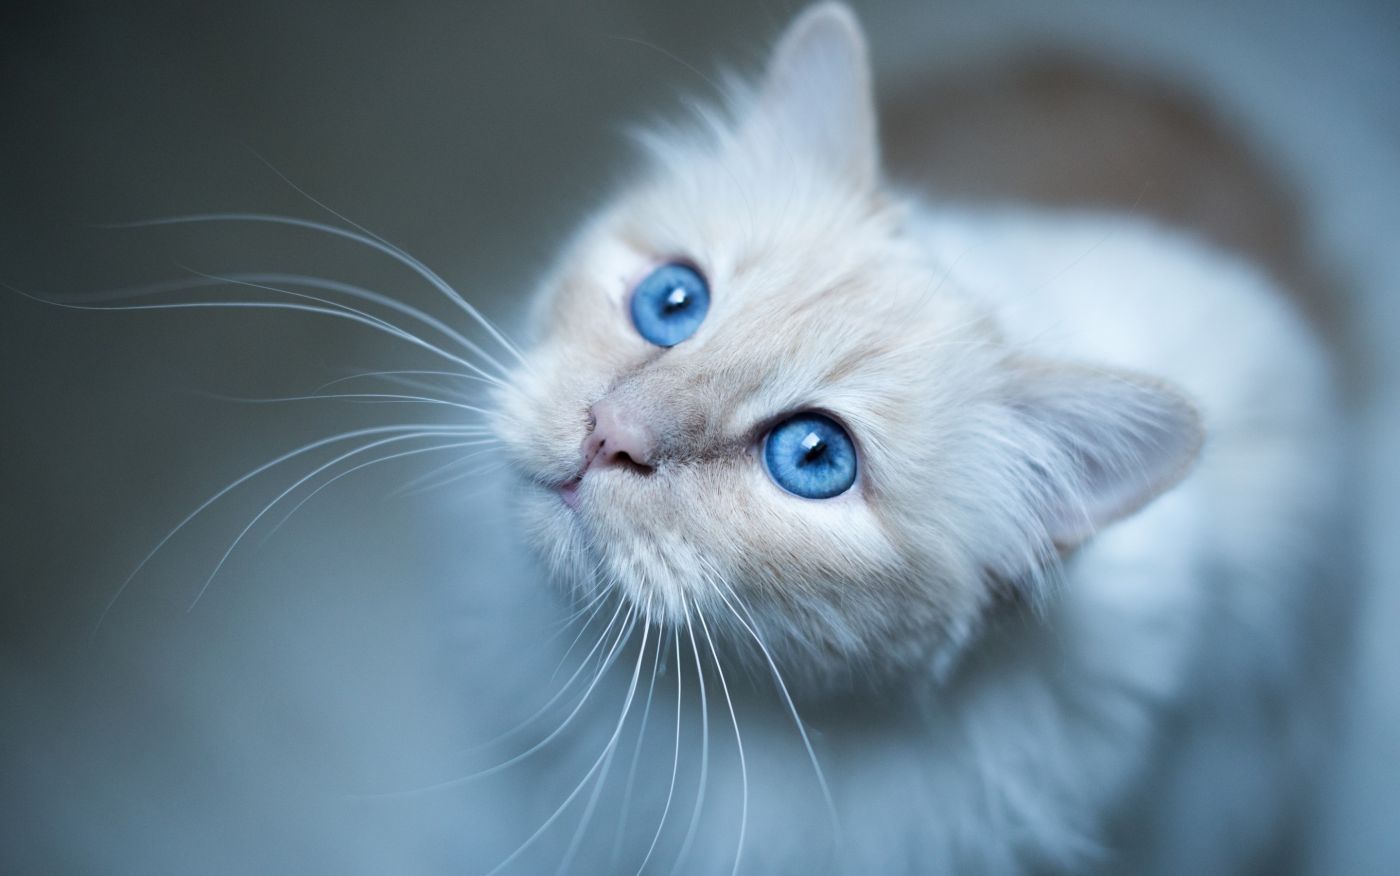 美丽的白猫 蓝色眼睛 高清图片壁纸美丽的白猫壁纸图片_桌面壁纸图片_壁纸下载-元气壁纸